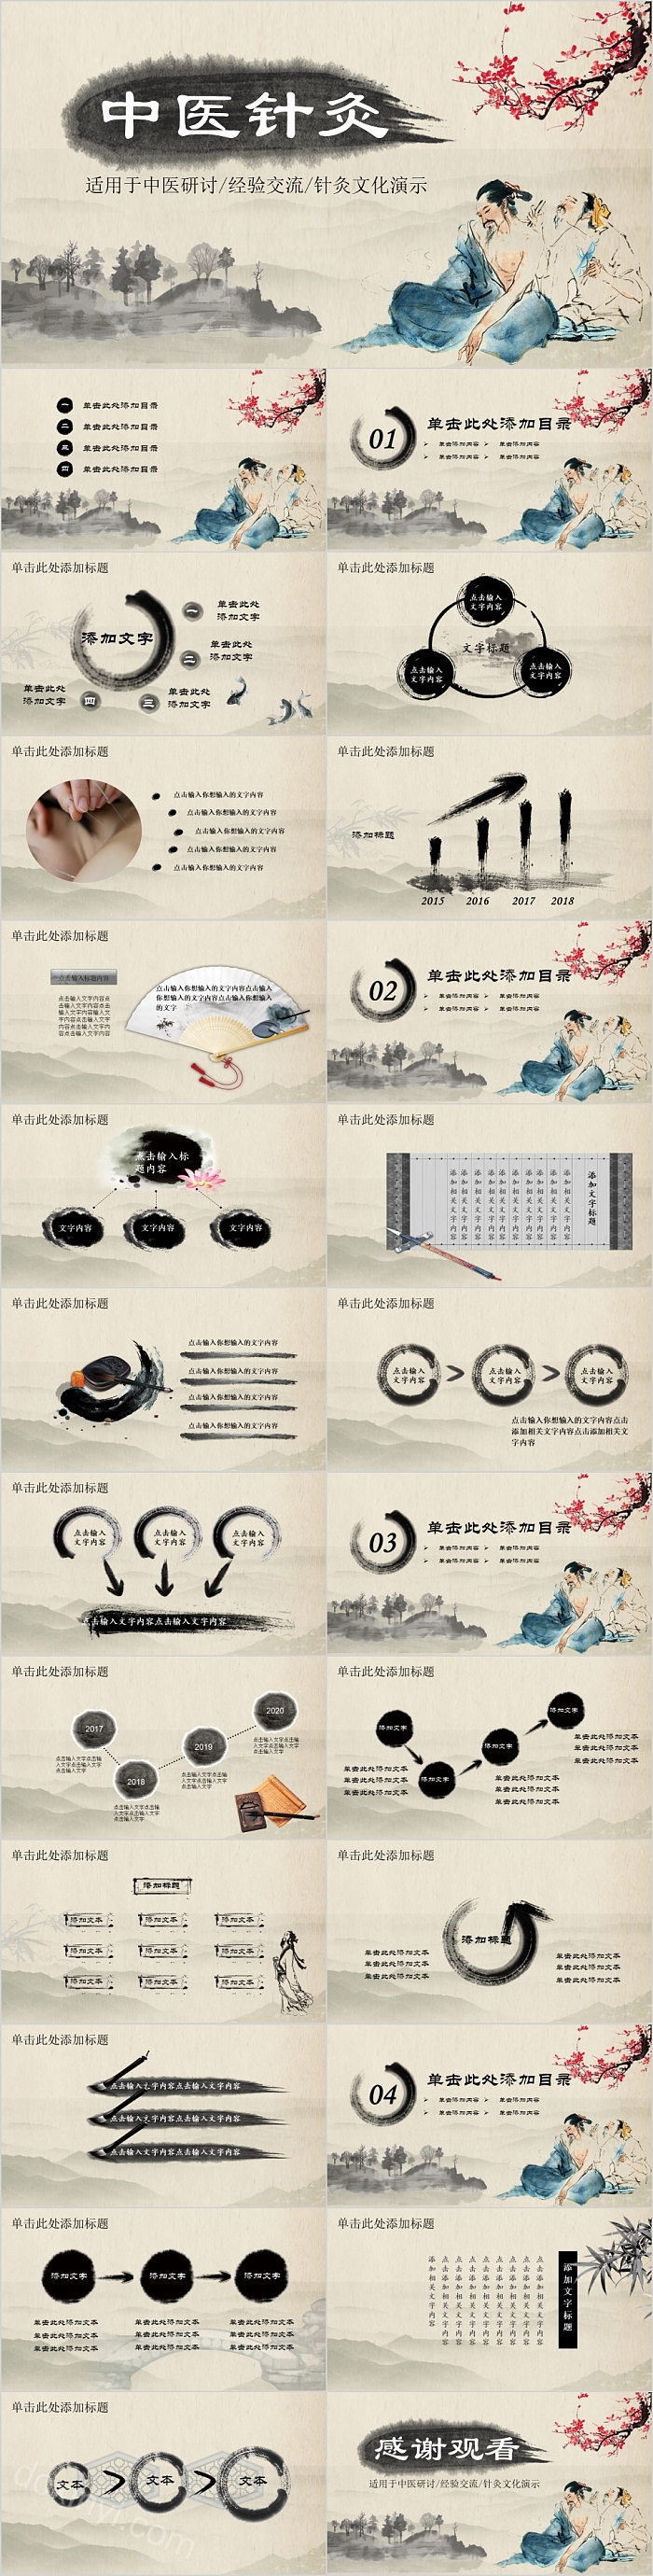 古典中国风中医针灸中医文化